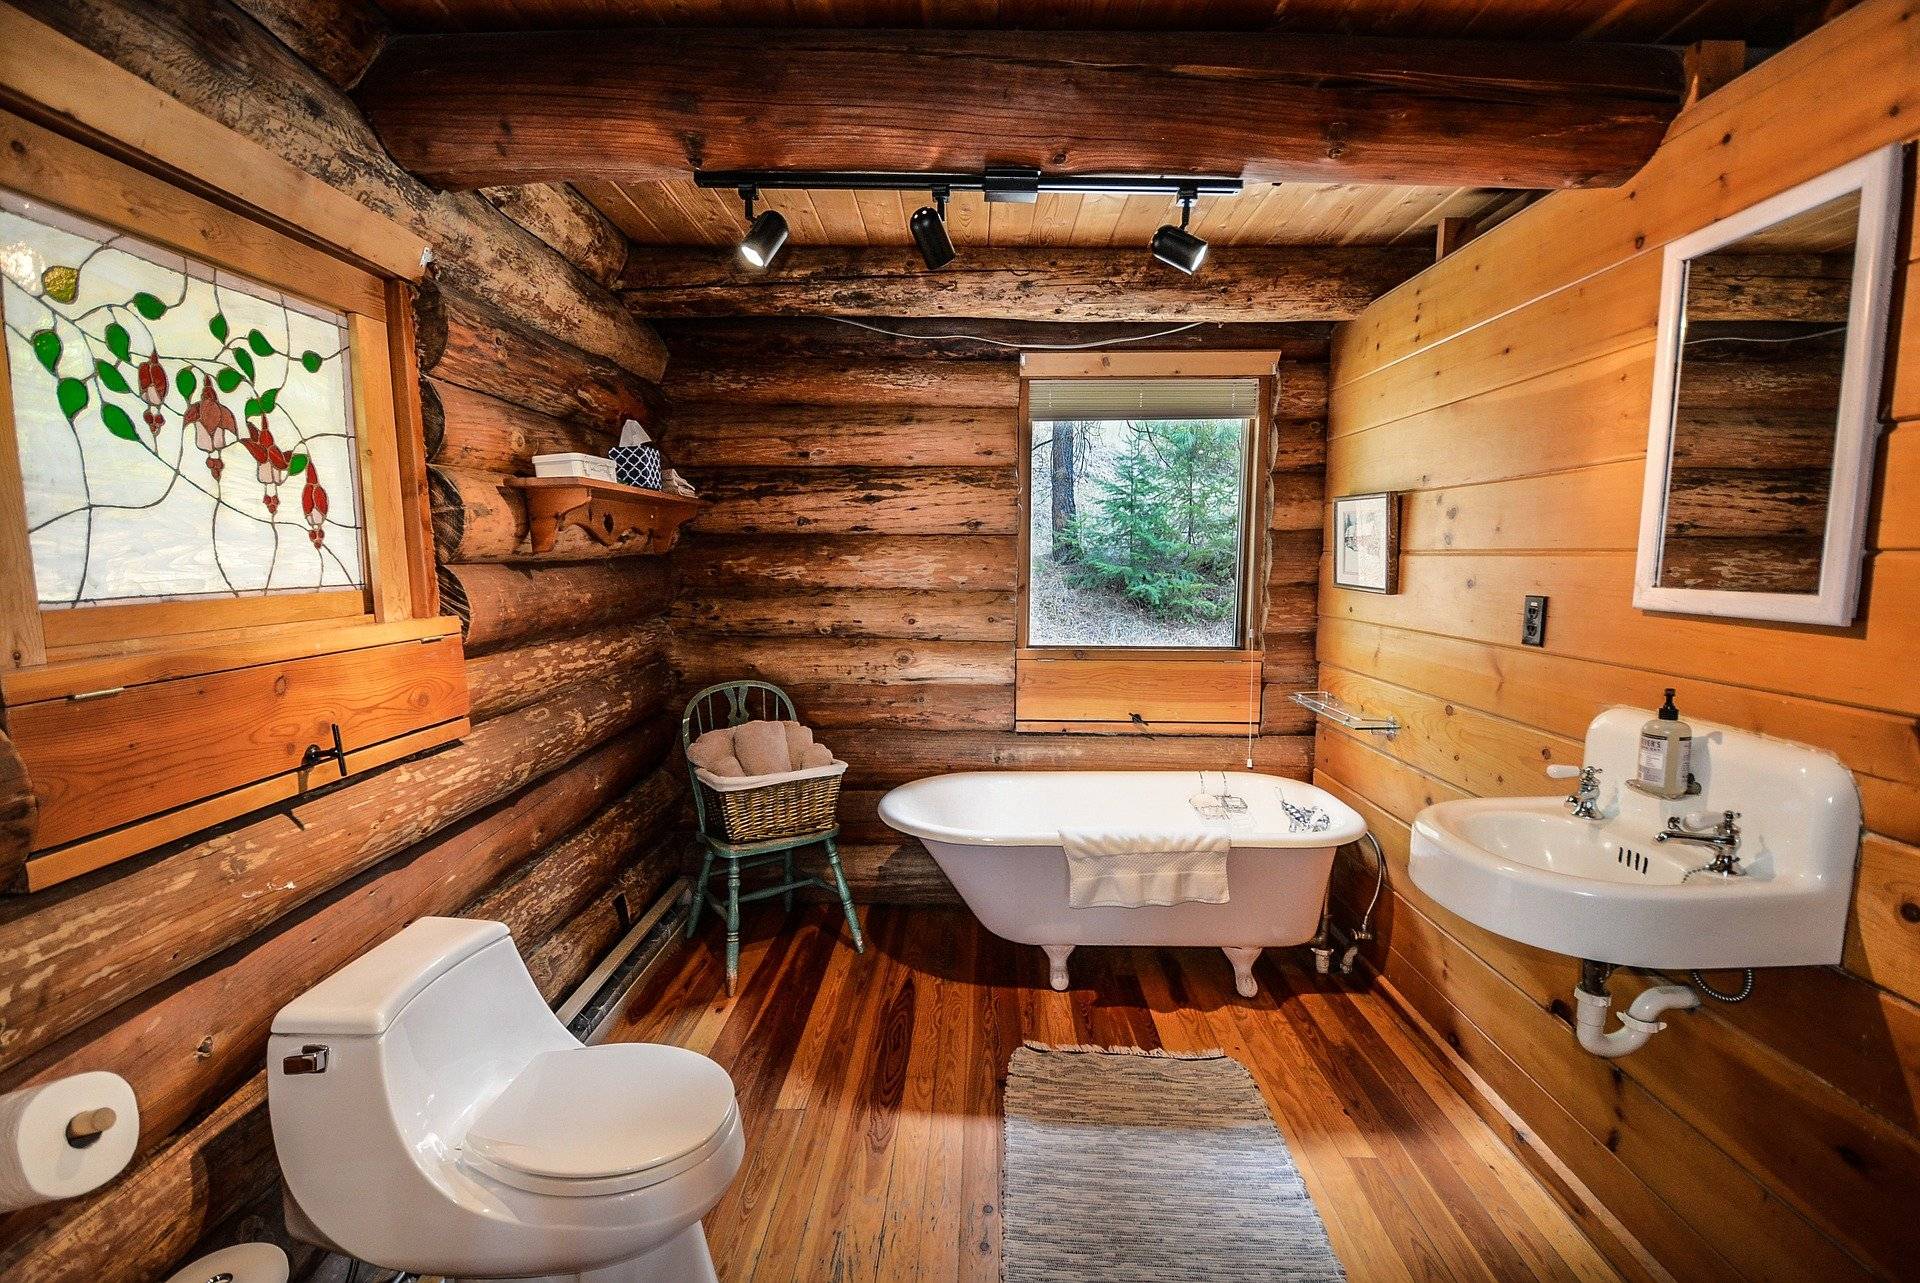 Ванная комната в деревянном доме: гидроизоляция, отделка поверхностей, дизайн помещения с фото примерами